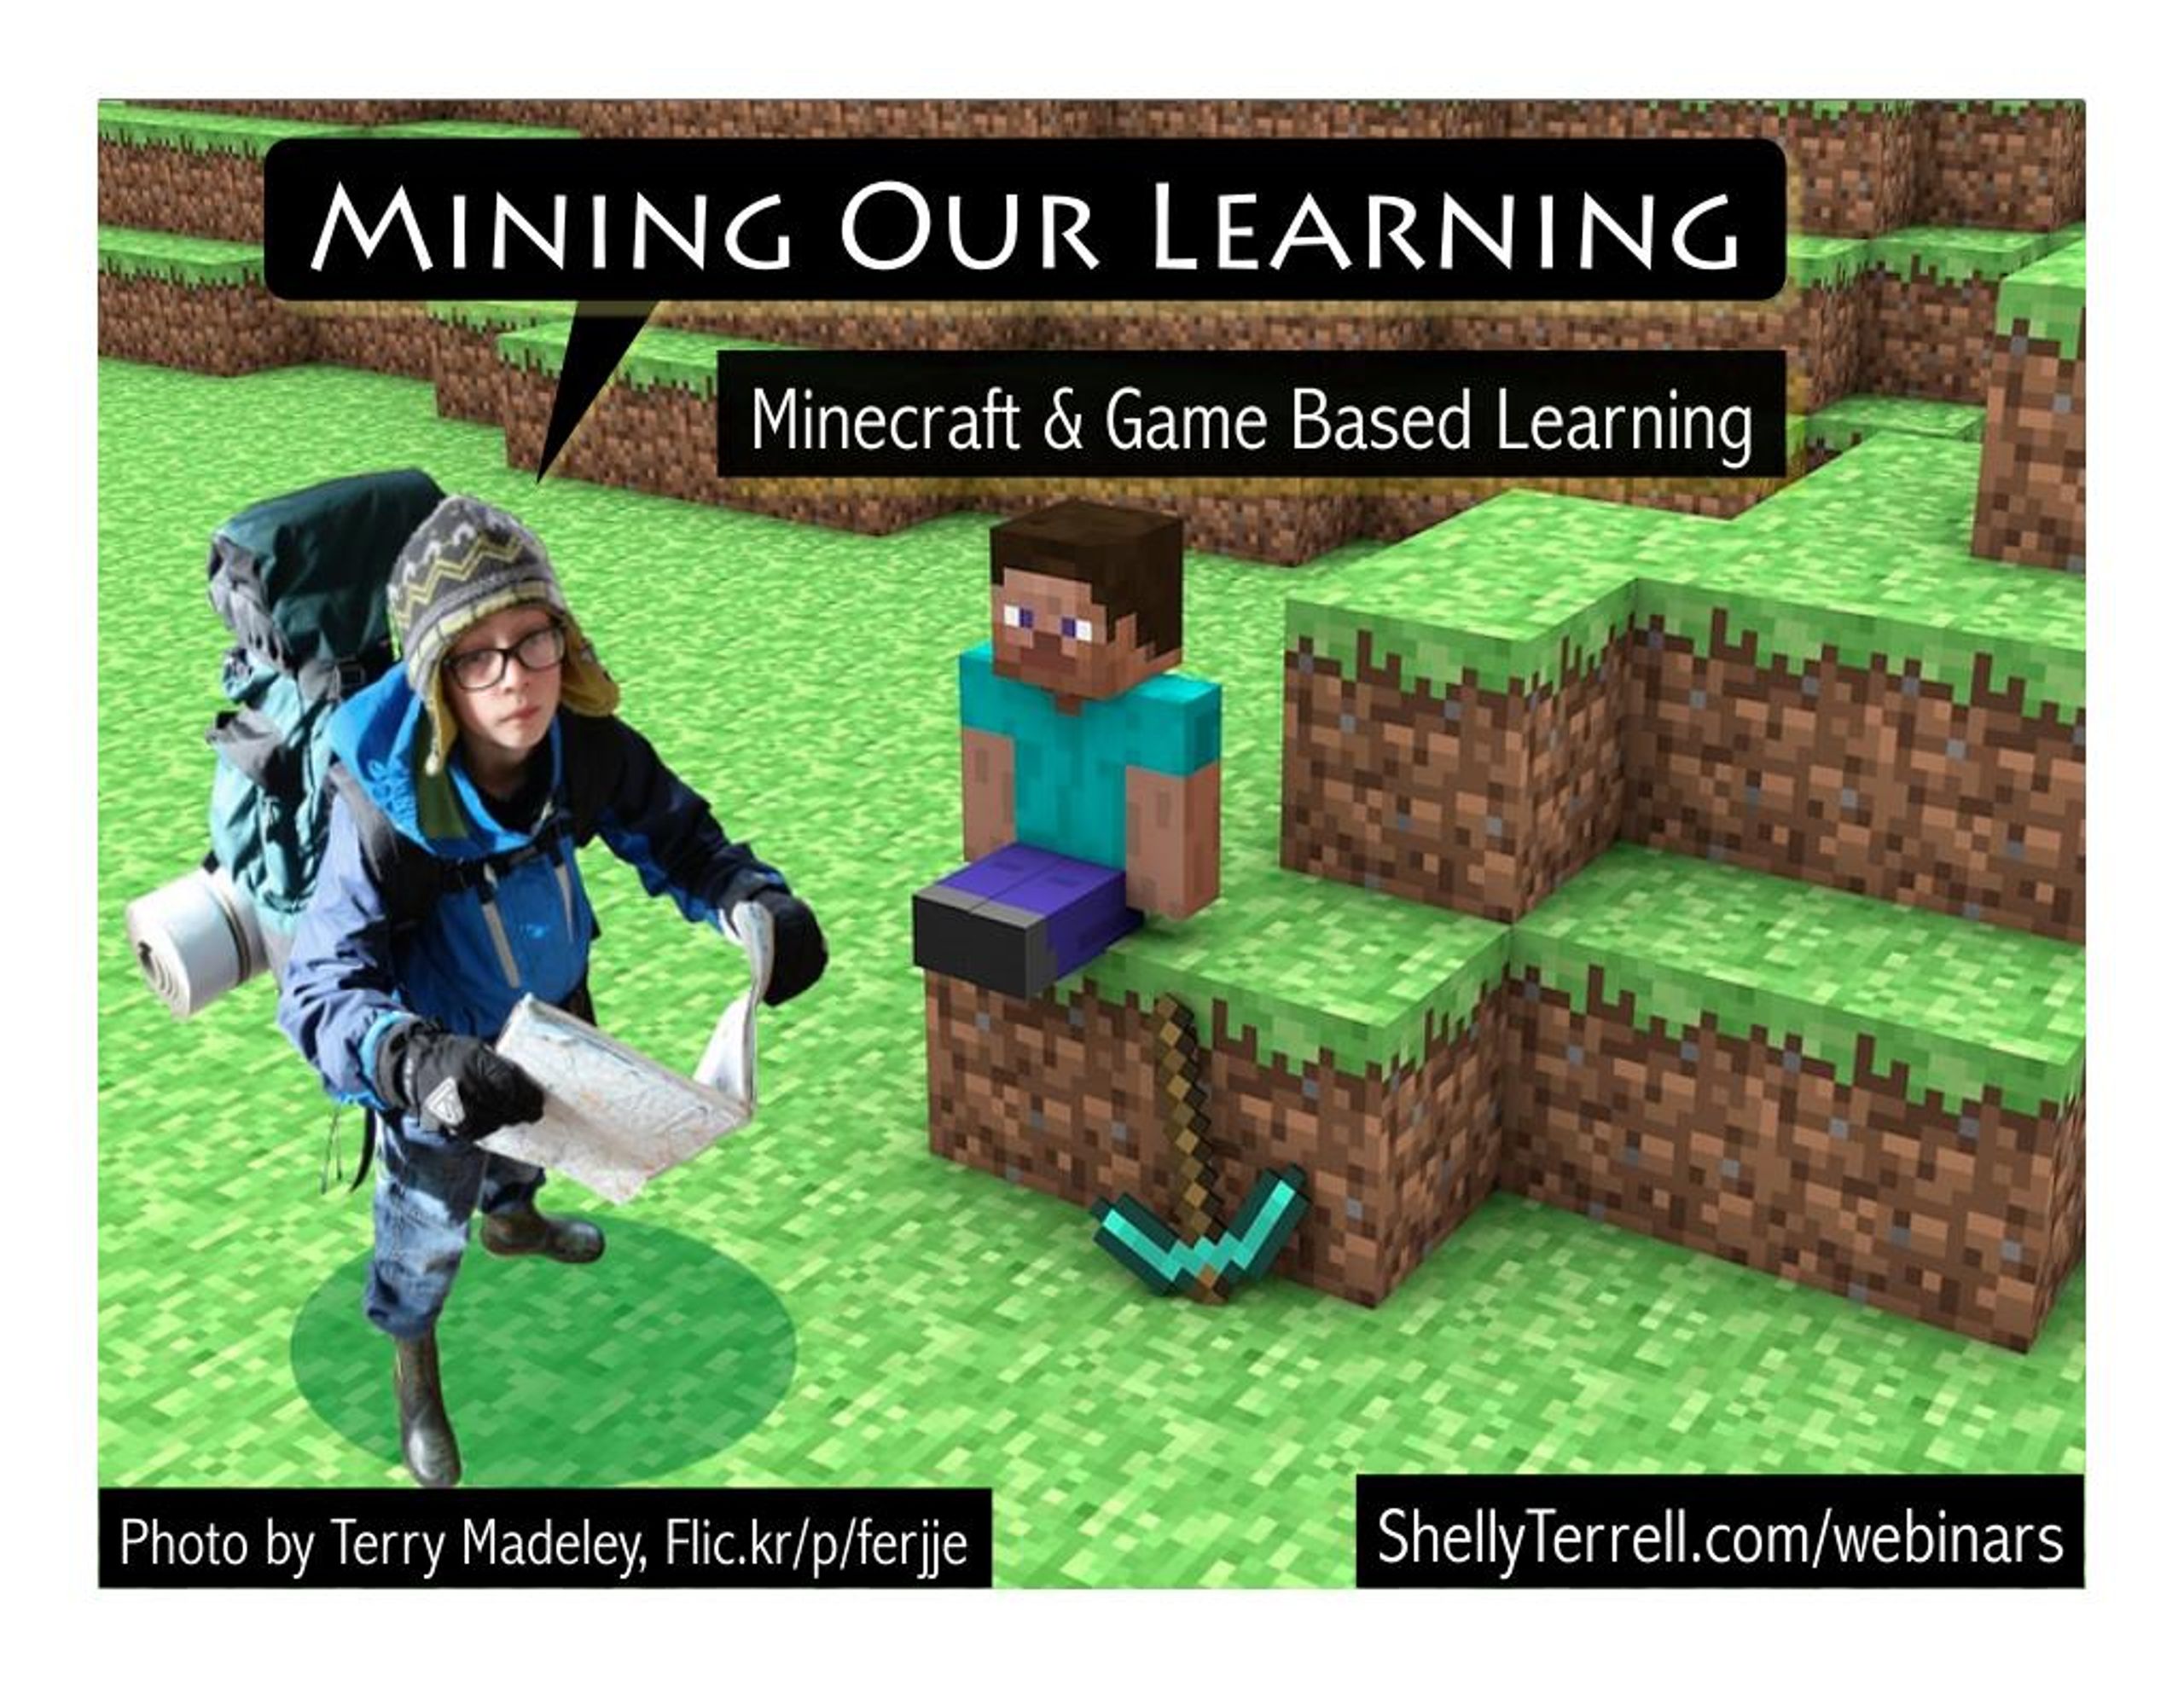 MinecraftEDU Building Challenge (Oct 2014) - Google Slides…